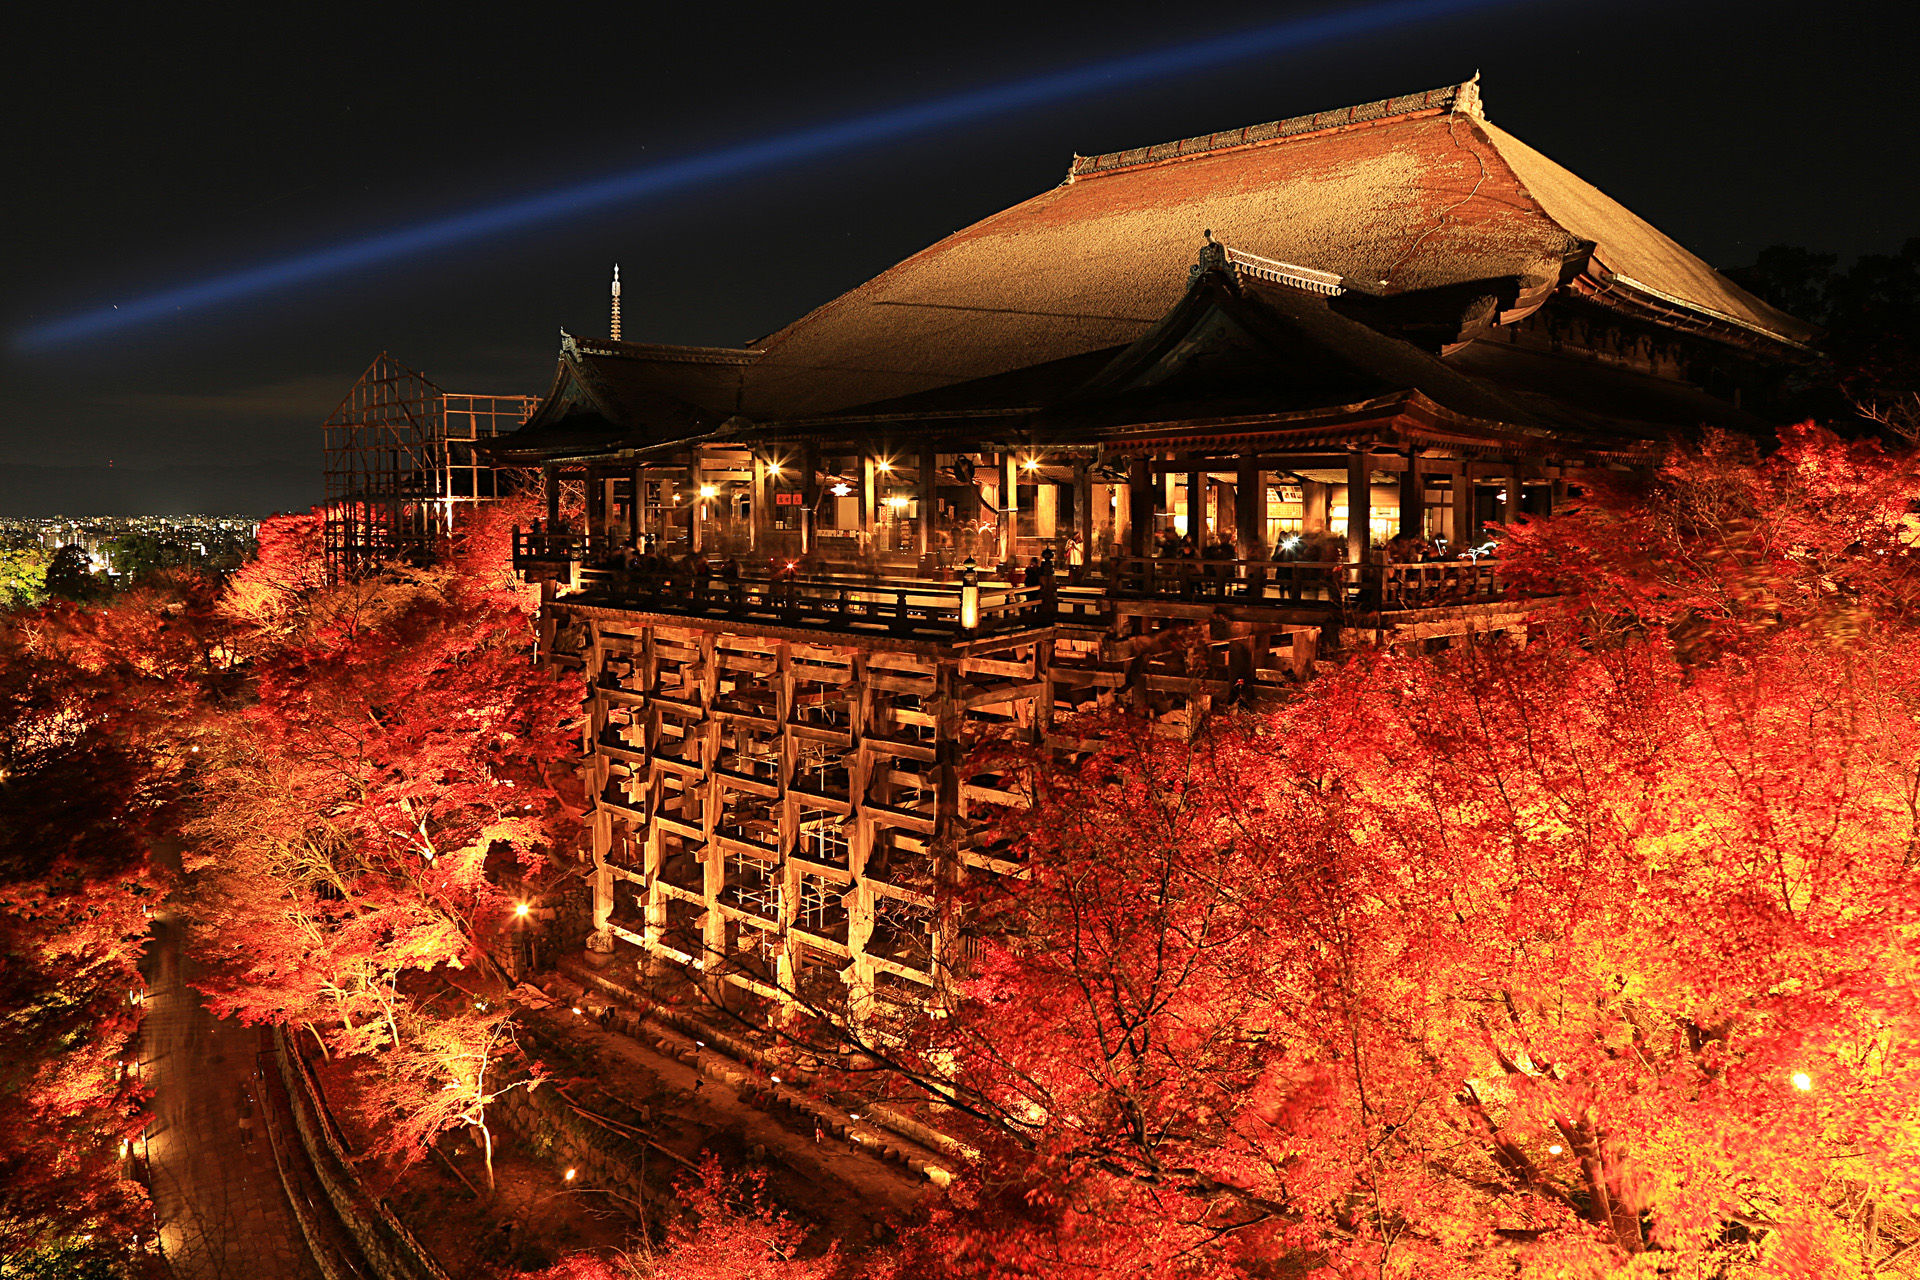 夜景 花火 イルミ 京都清水寺ライトアップ 壁紙19x1280 壁紙館